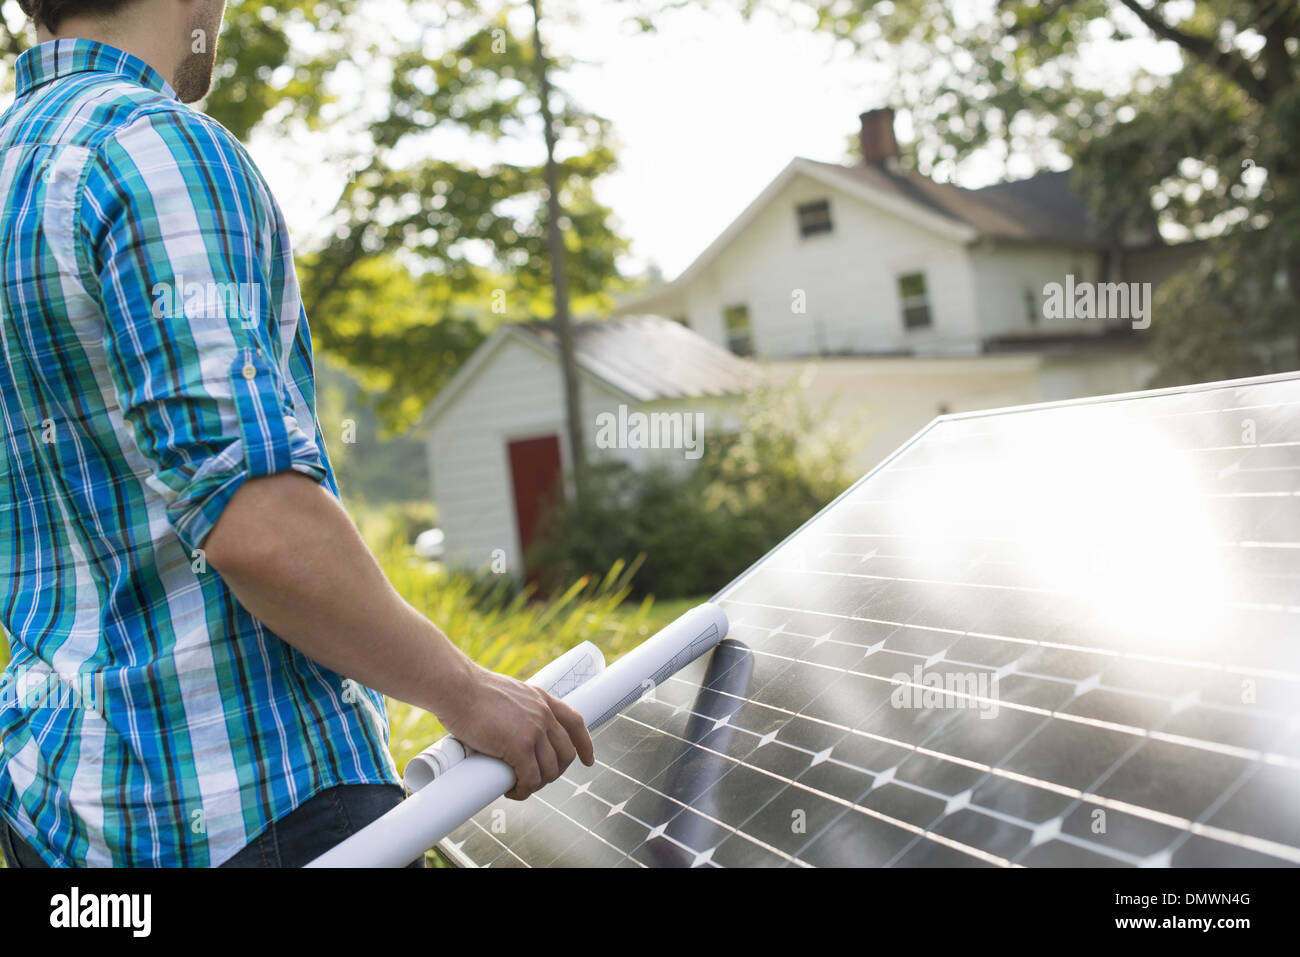 Ein Mann mit einem Plan, um ein Solar-Panel in einem Bauerngarten zu platzieren. Stockfoto